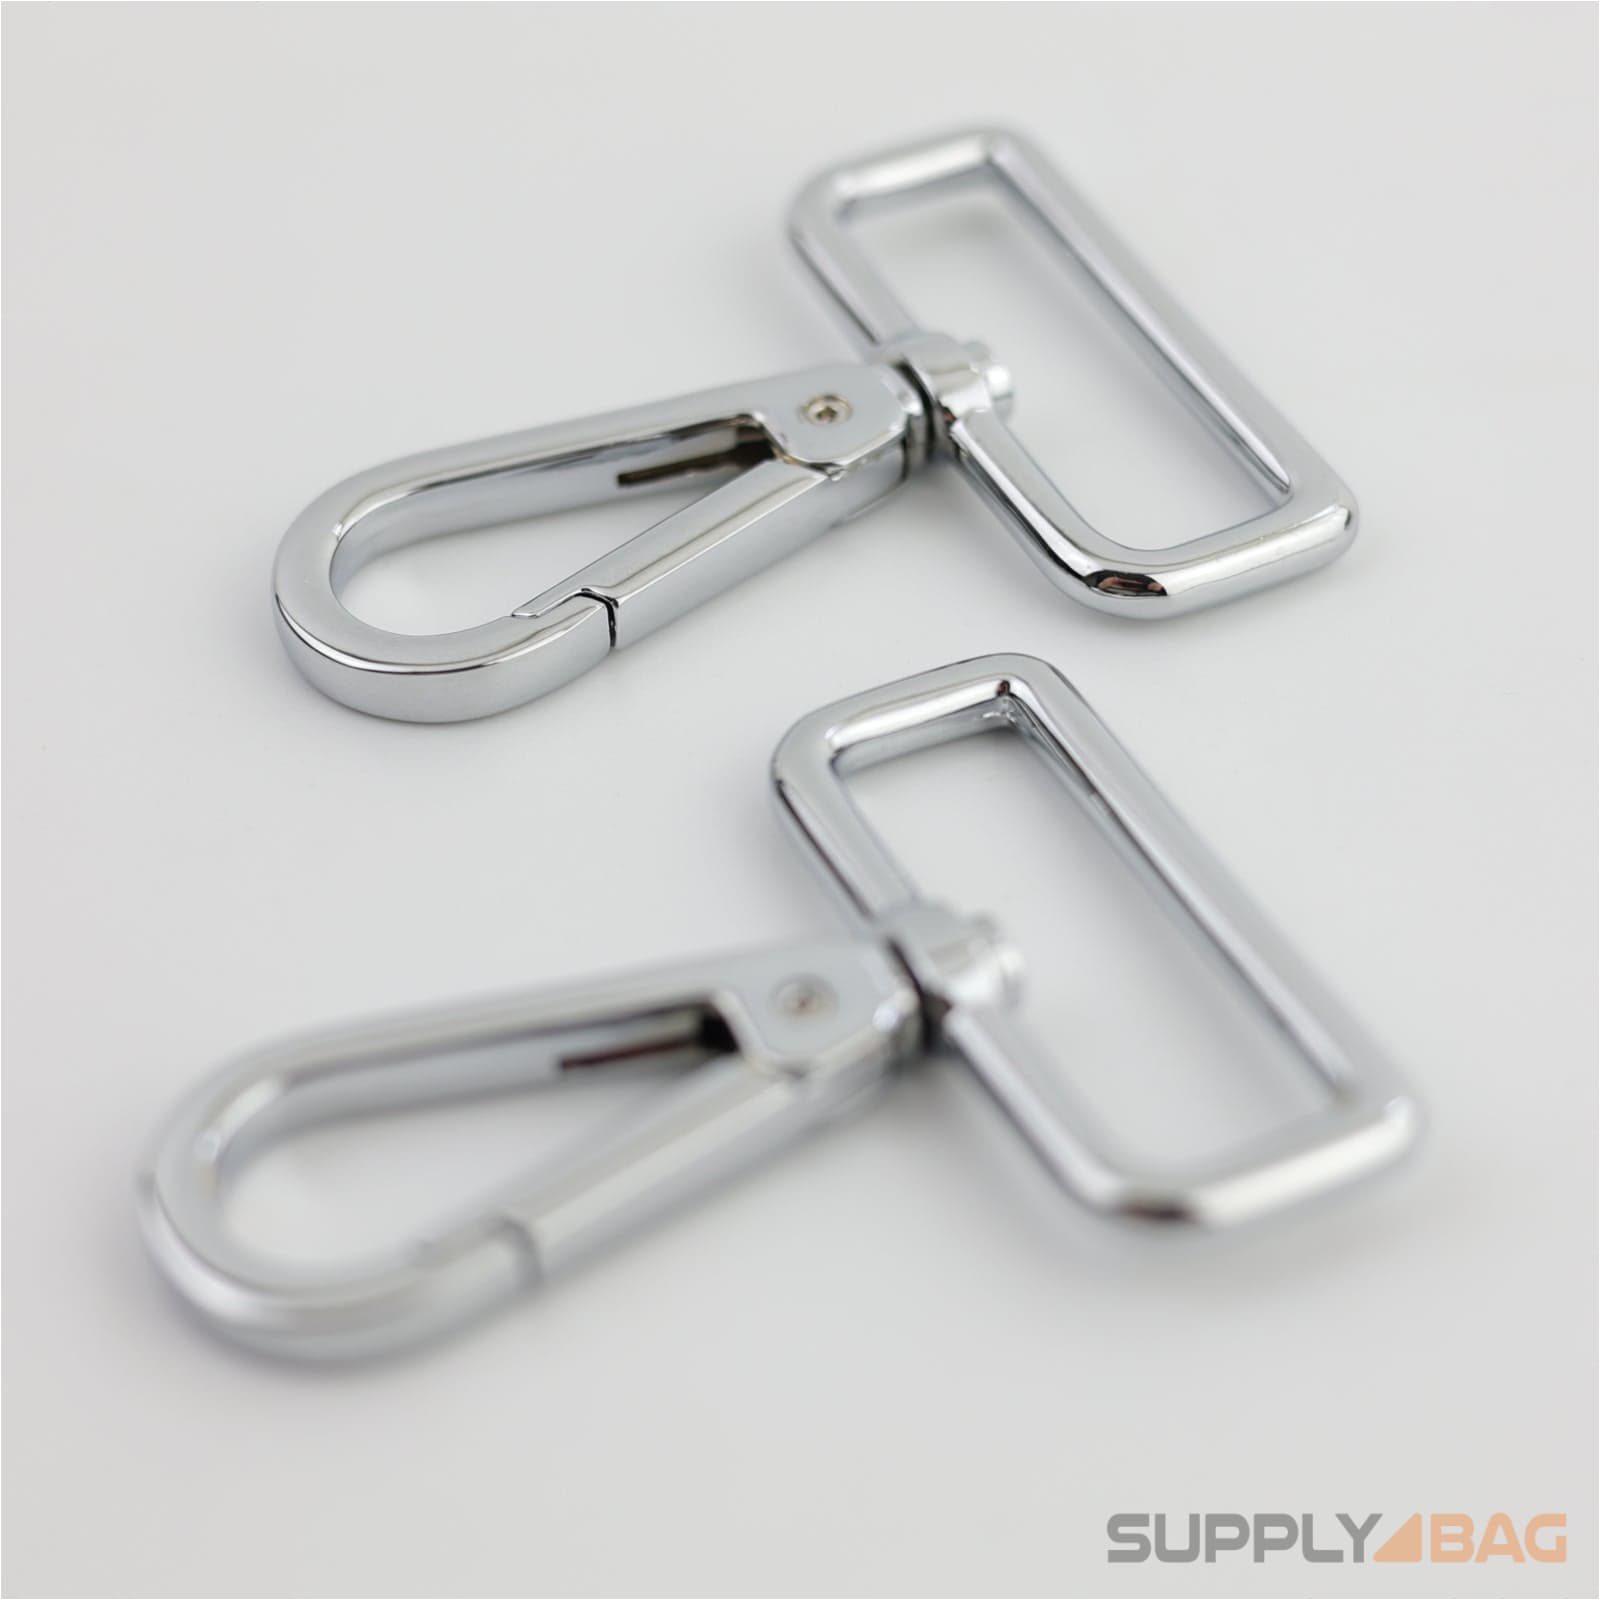 Silver Swivel Hooks 1 1/2 inch - 2 Pack